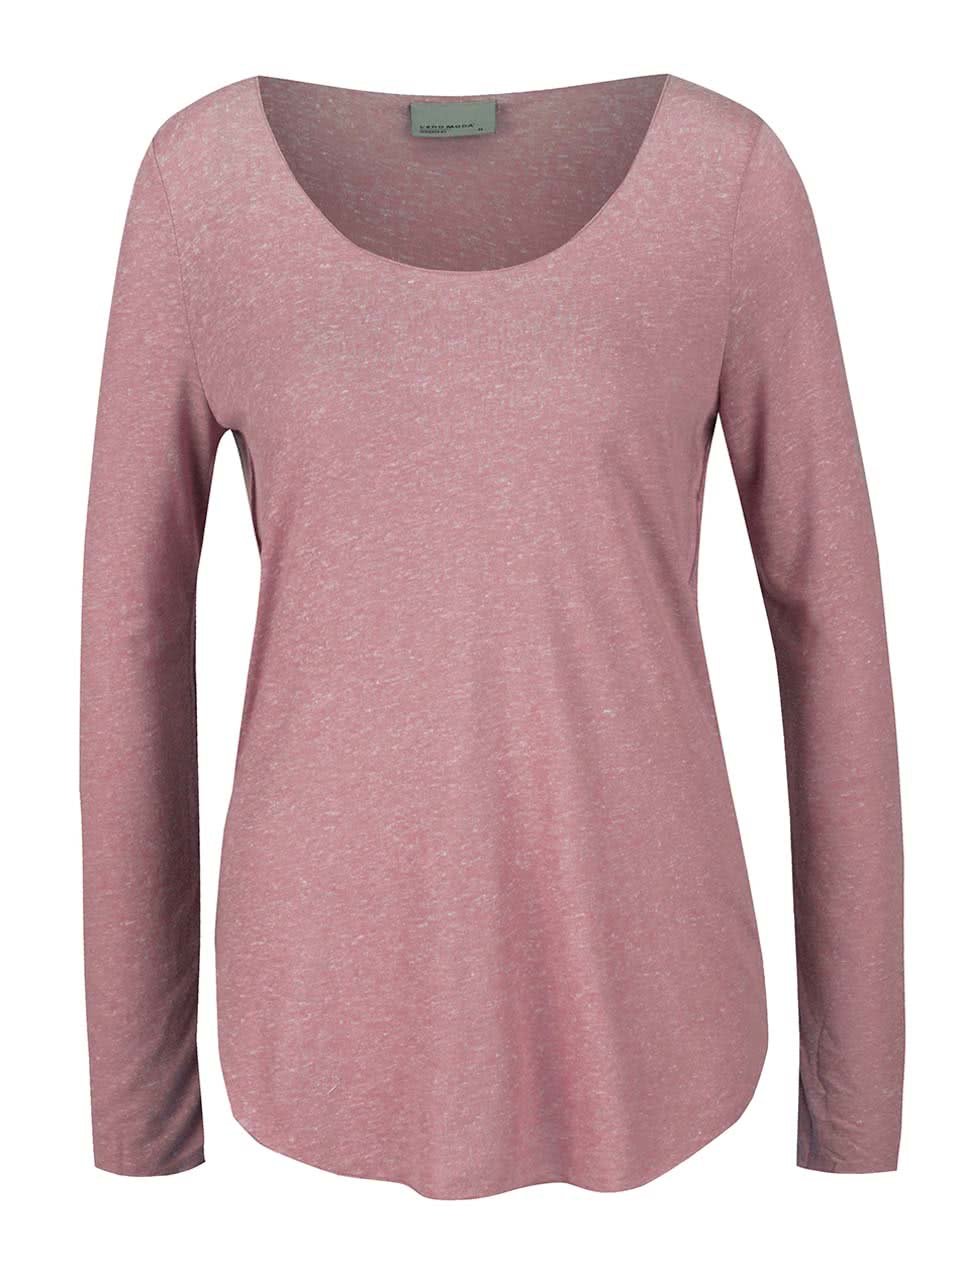 Růžové žíhané tričko s dlouhými rukávy Vero Moda Lua